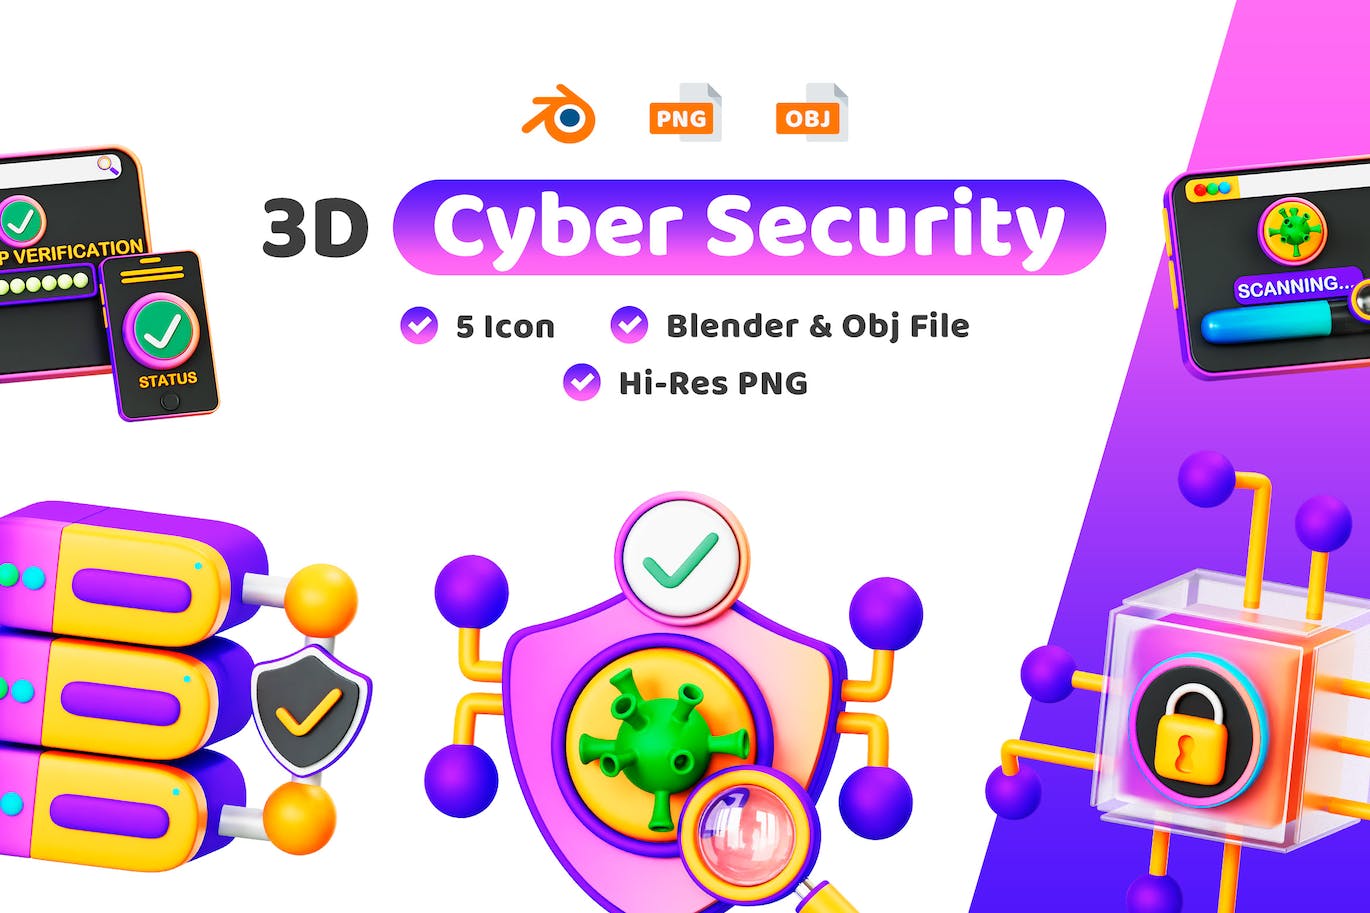 网络安全3D图标 (PNG,blend,obj)